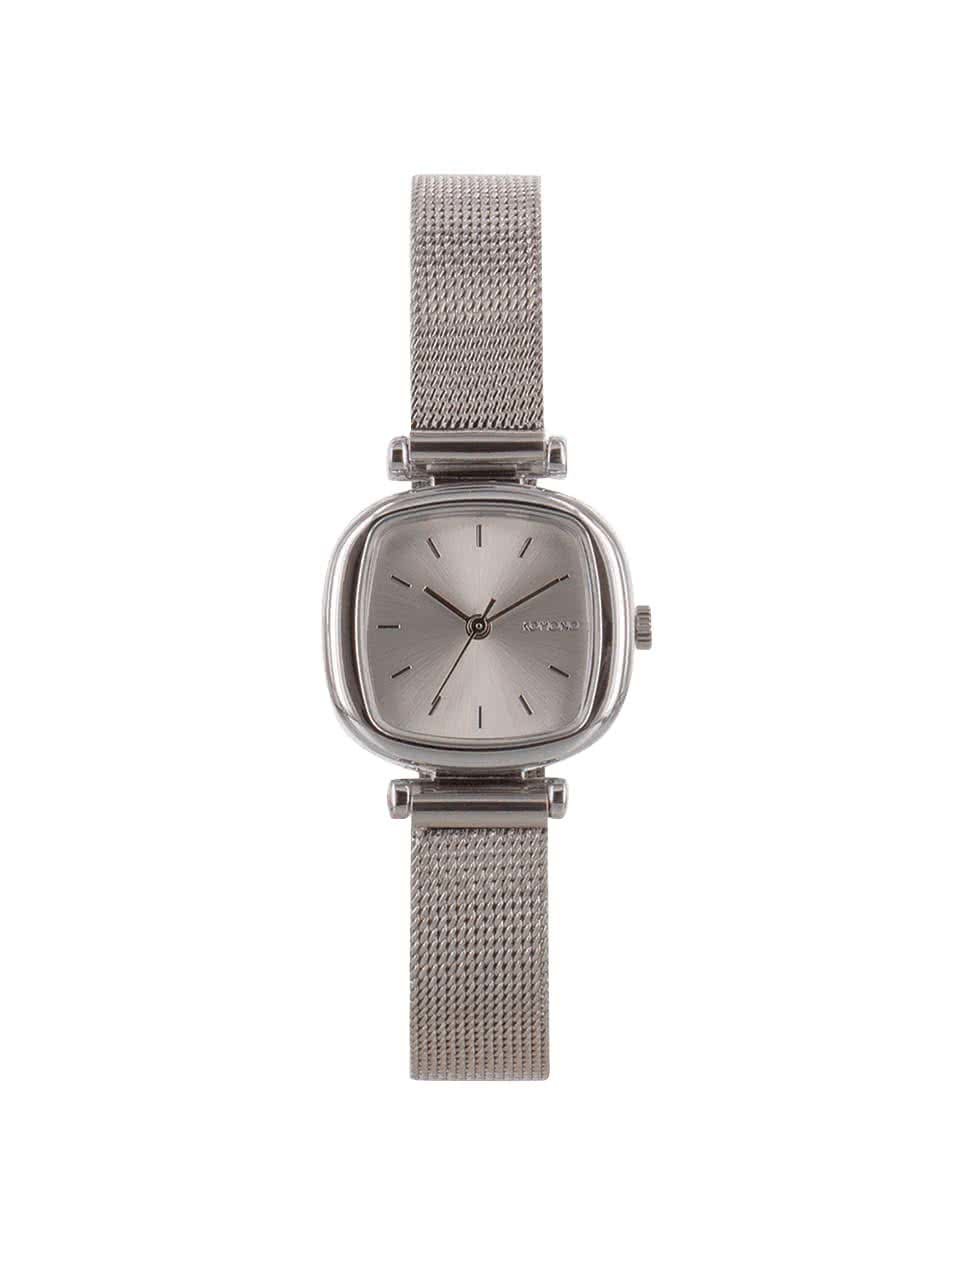 Dámské hodinky ve stříbrné barvě s nerezovým páskem Komono Moneypenny Royale Silver